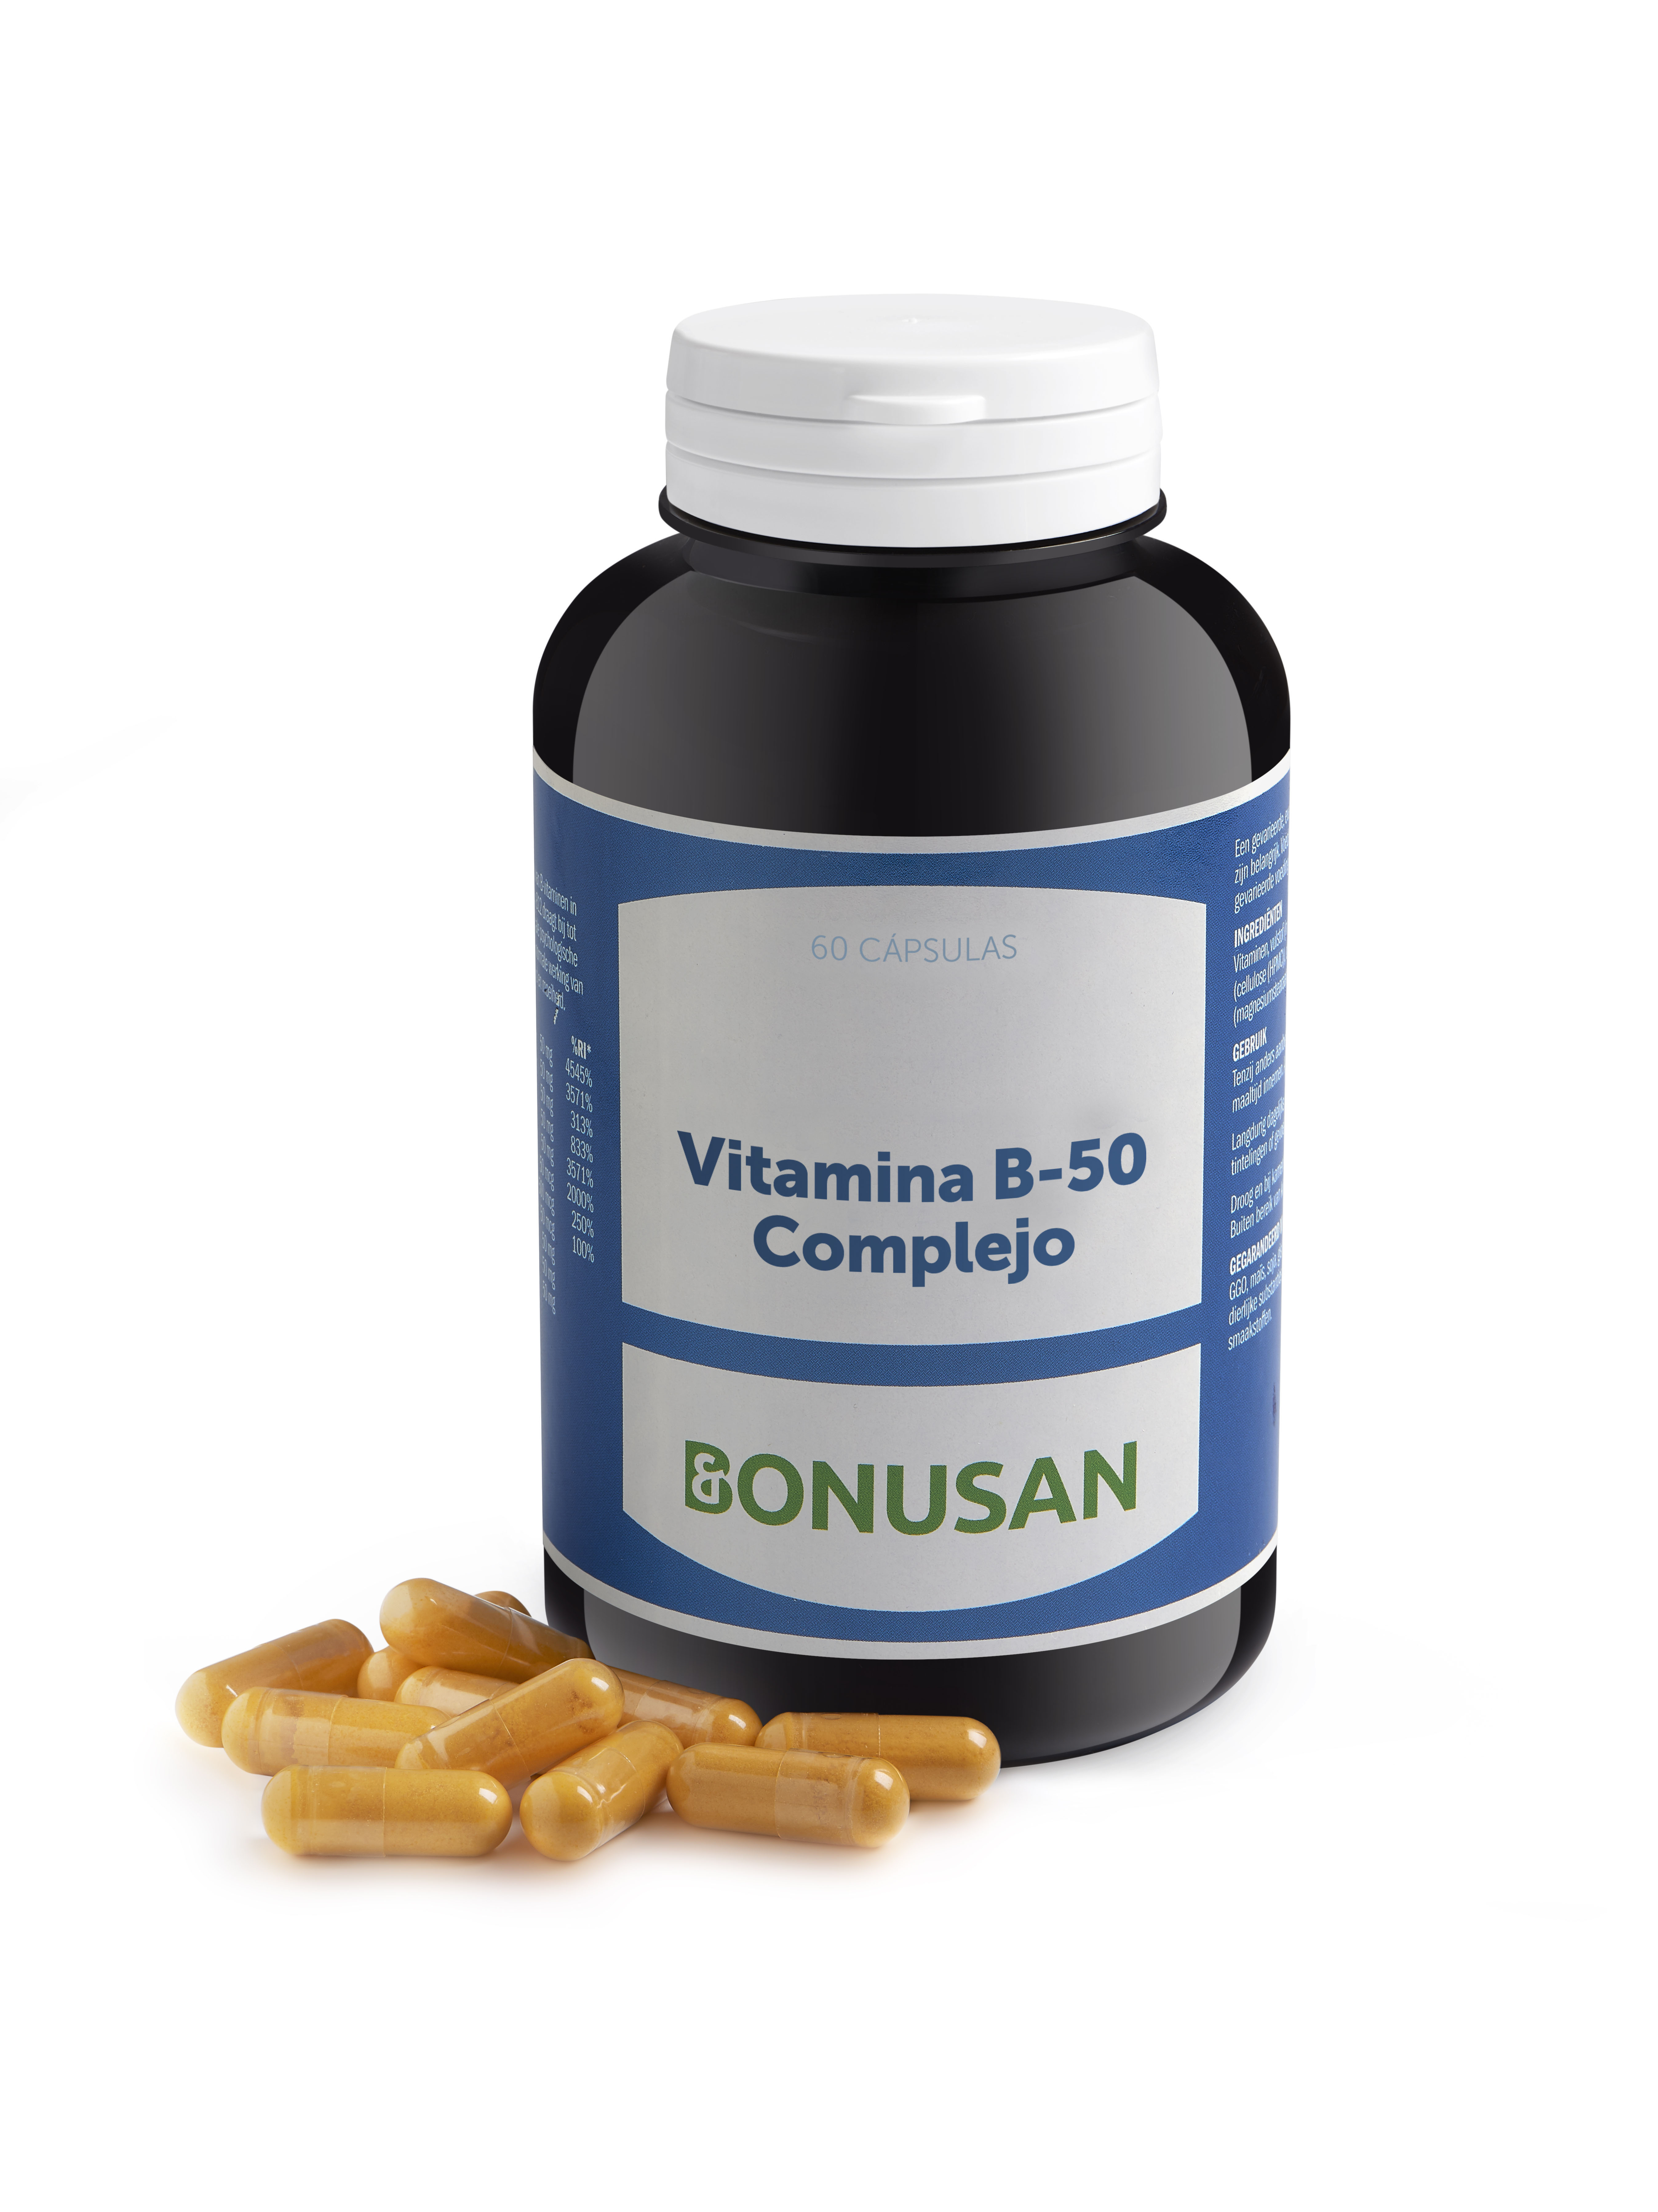 Vitamina B-50 Complejo